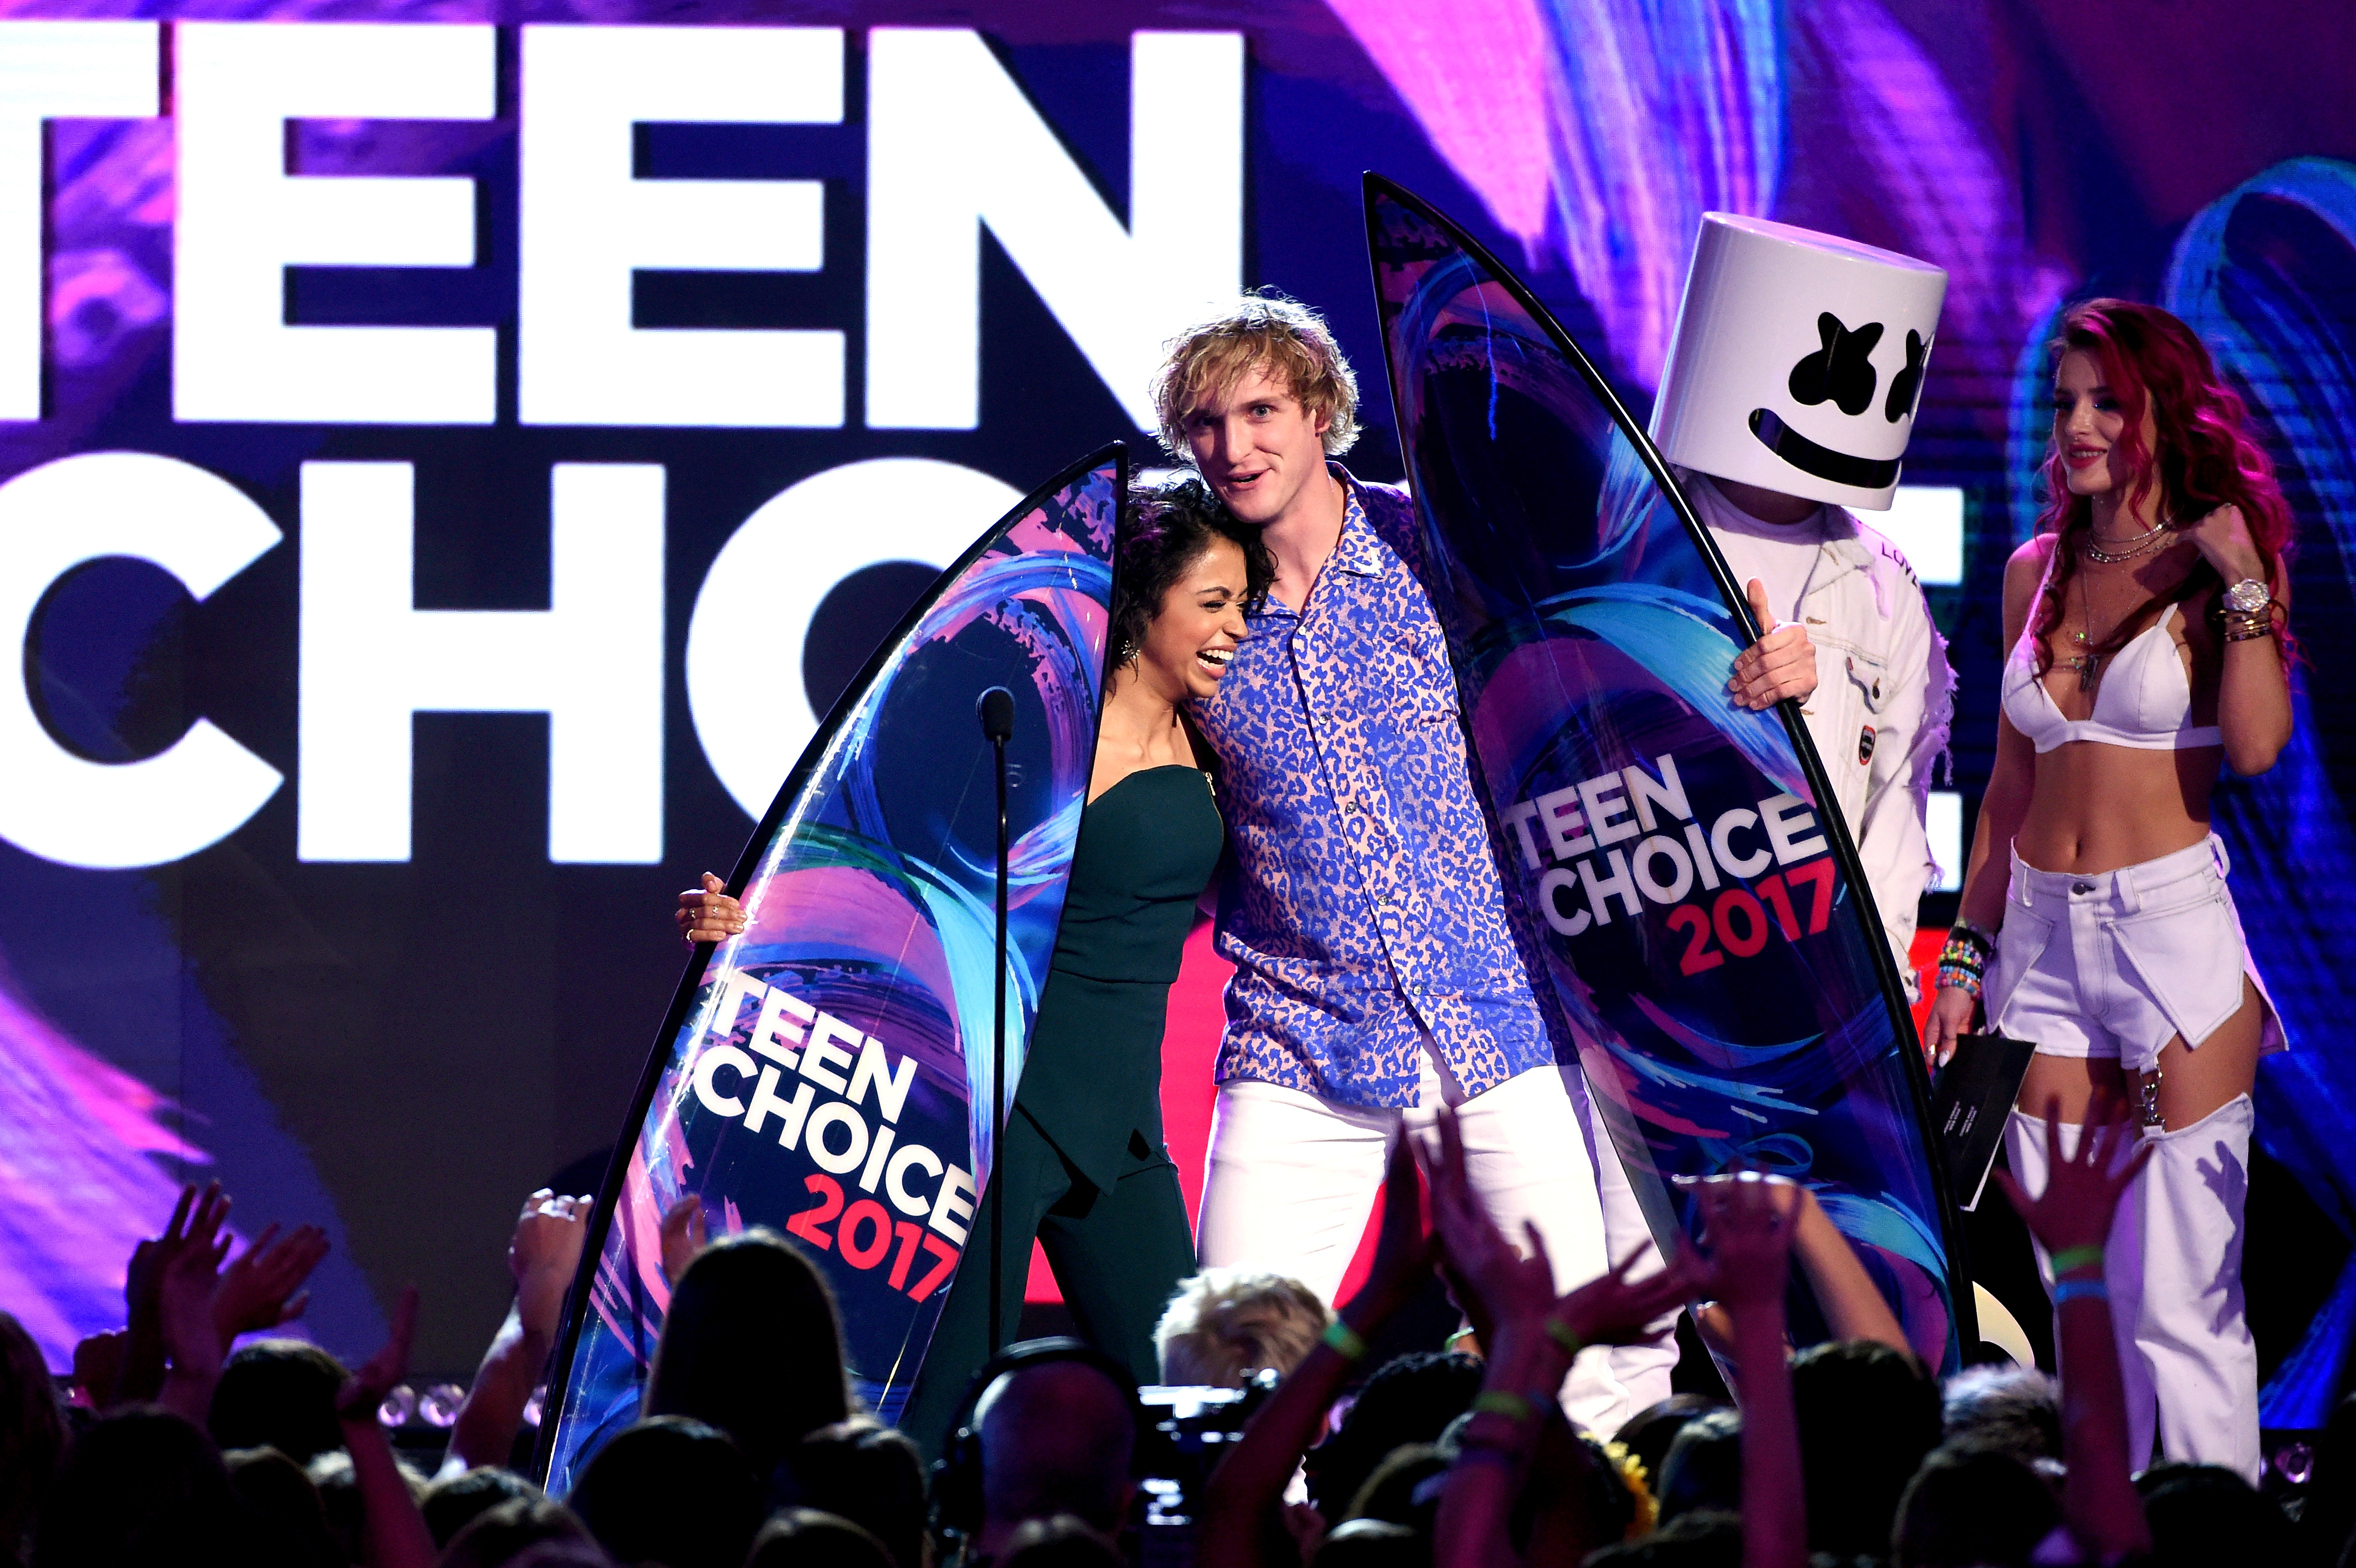 Teen Choice Awards 2017 - Show